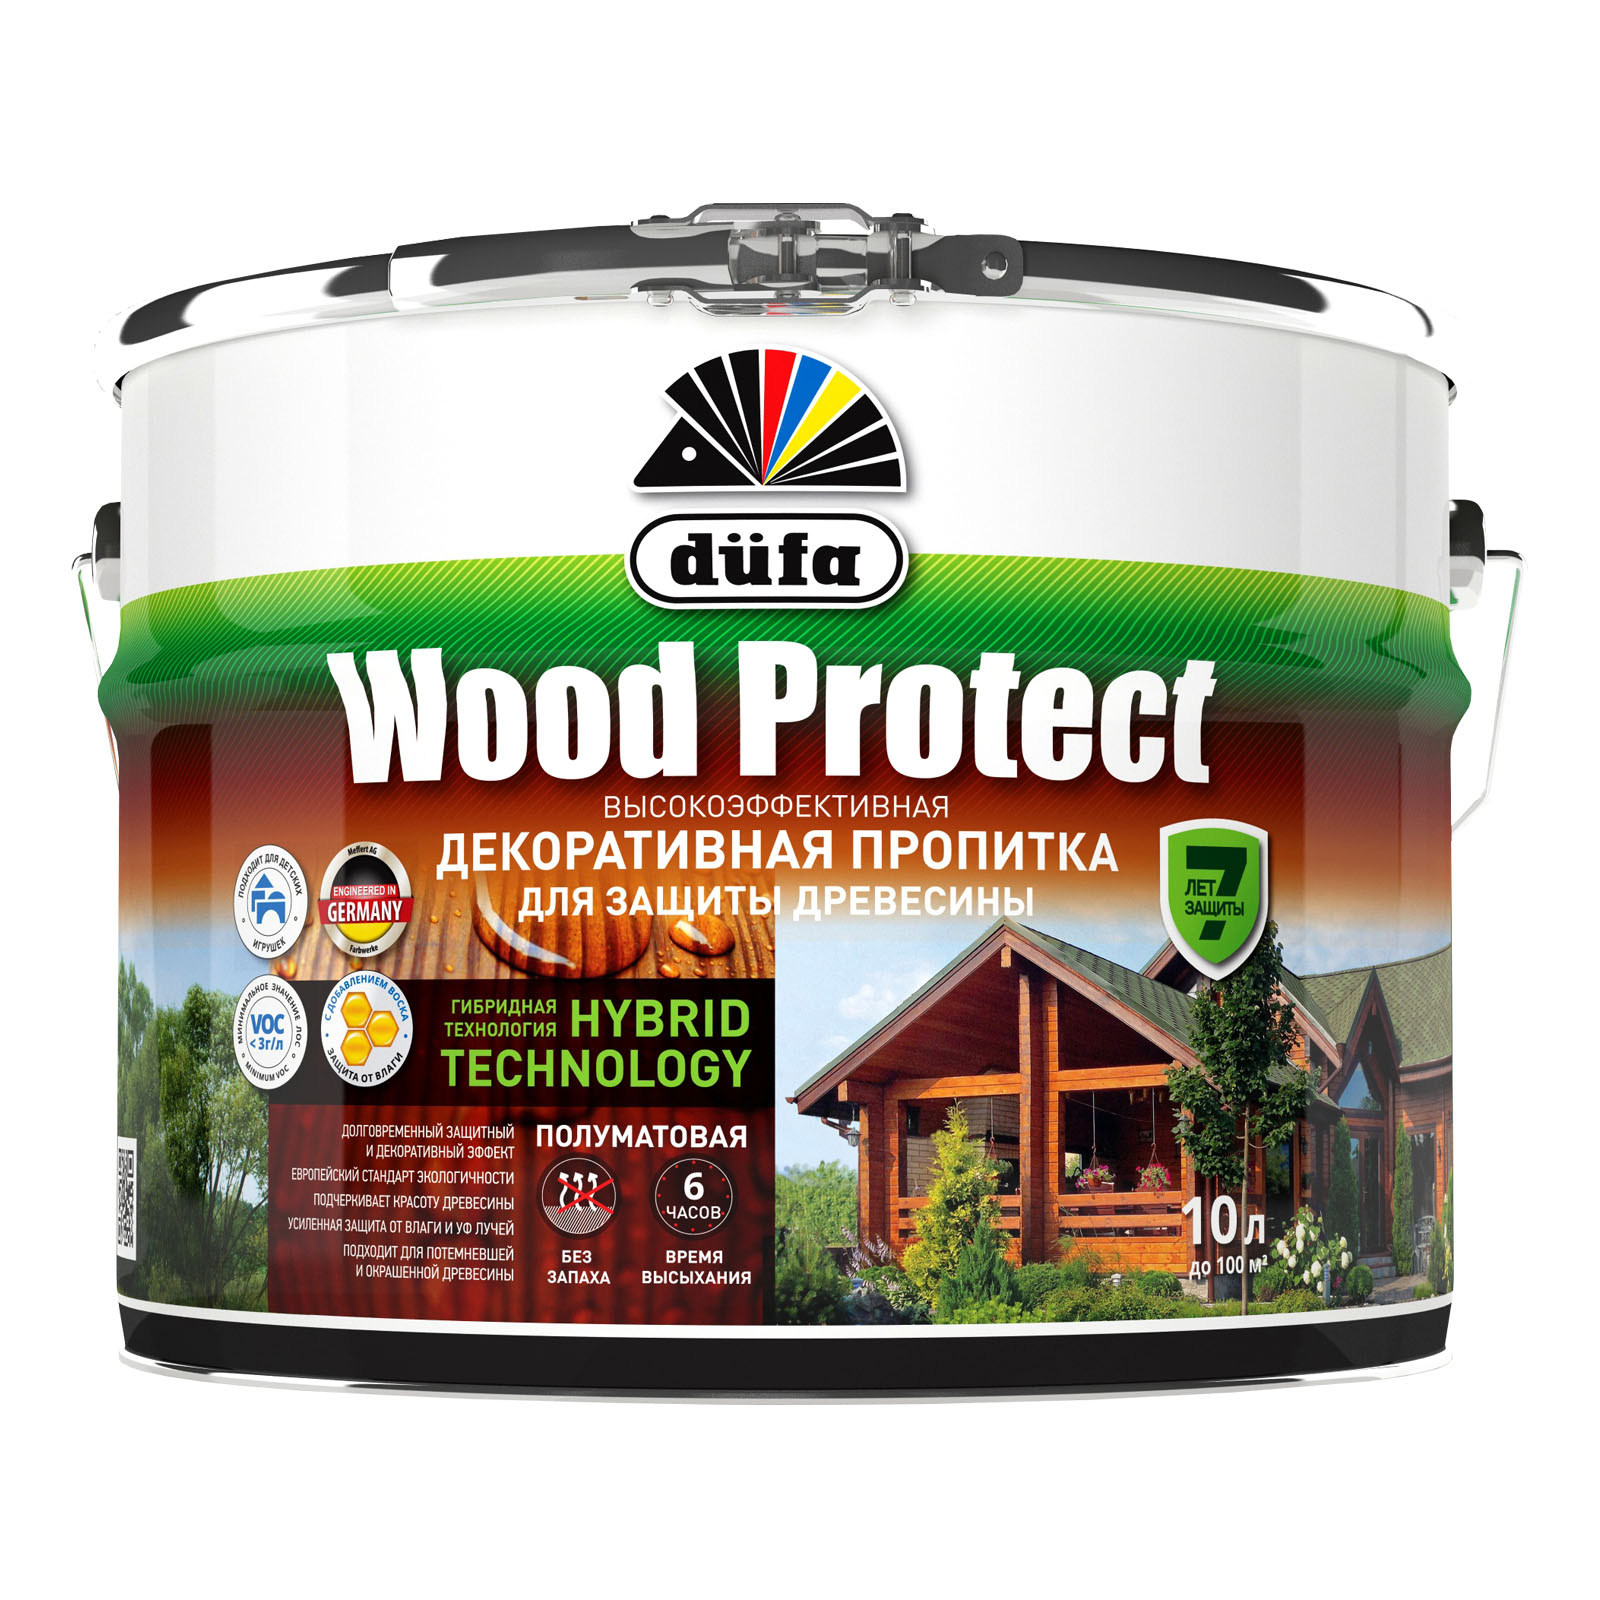 Пропитка для древесины Dufa Wood Protect палисандр, 10 л пропитка для дерева dufa wood protect полуматовая палисандр 9 л